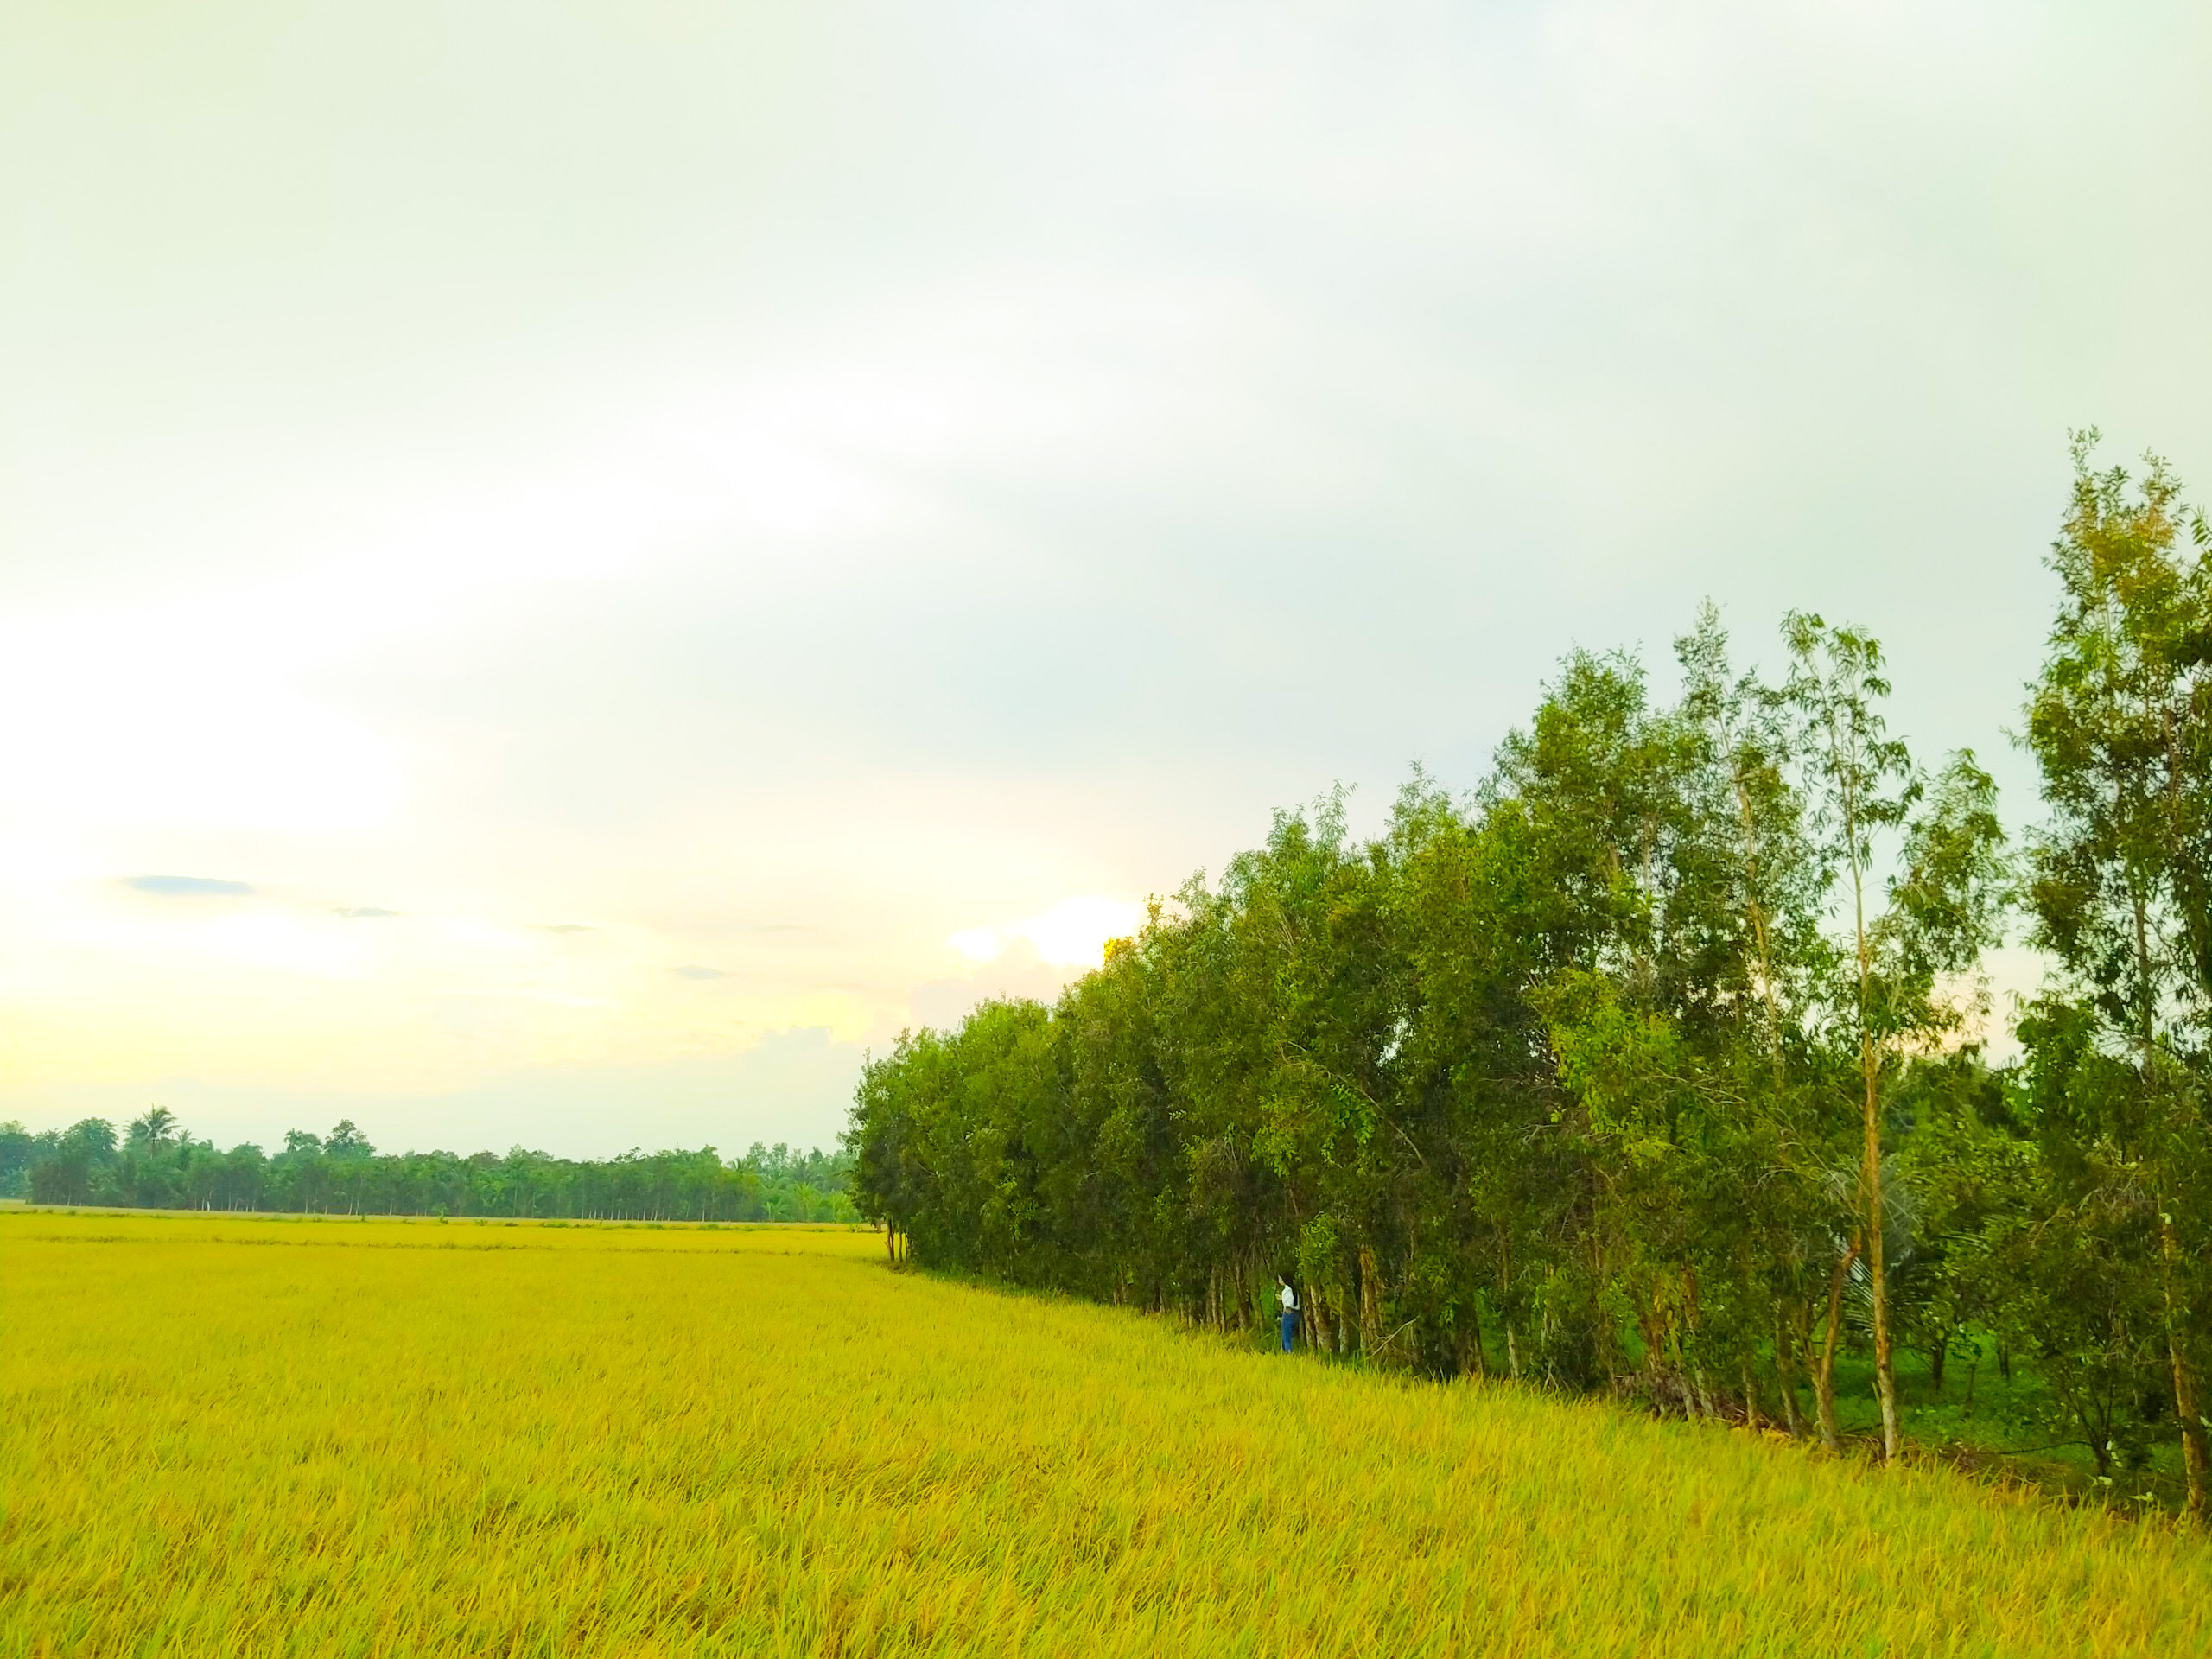 Lúa bạt ngàn là biểu tượng của sự phát triển và bền vững của đất nước. Tận hưởng hình ảnh những cánh đồng lúa rộng mở và cảm nhận không khí tươi mới và trong lành của thiên nhiên.